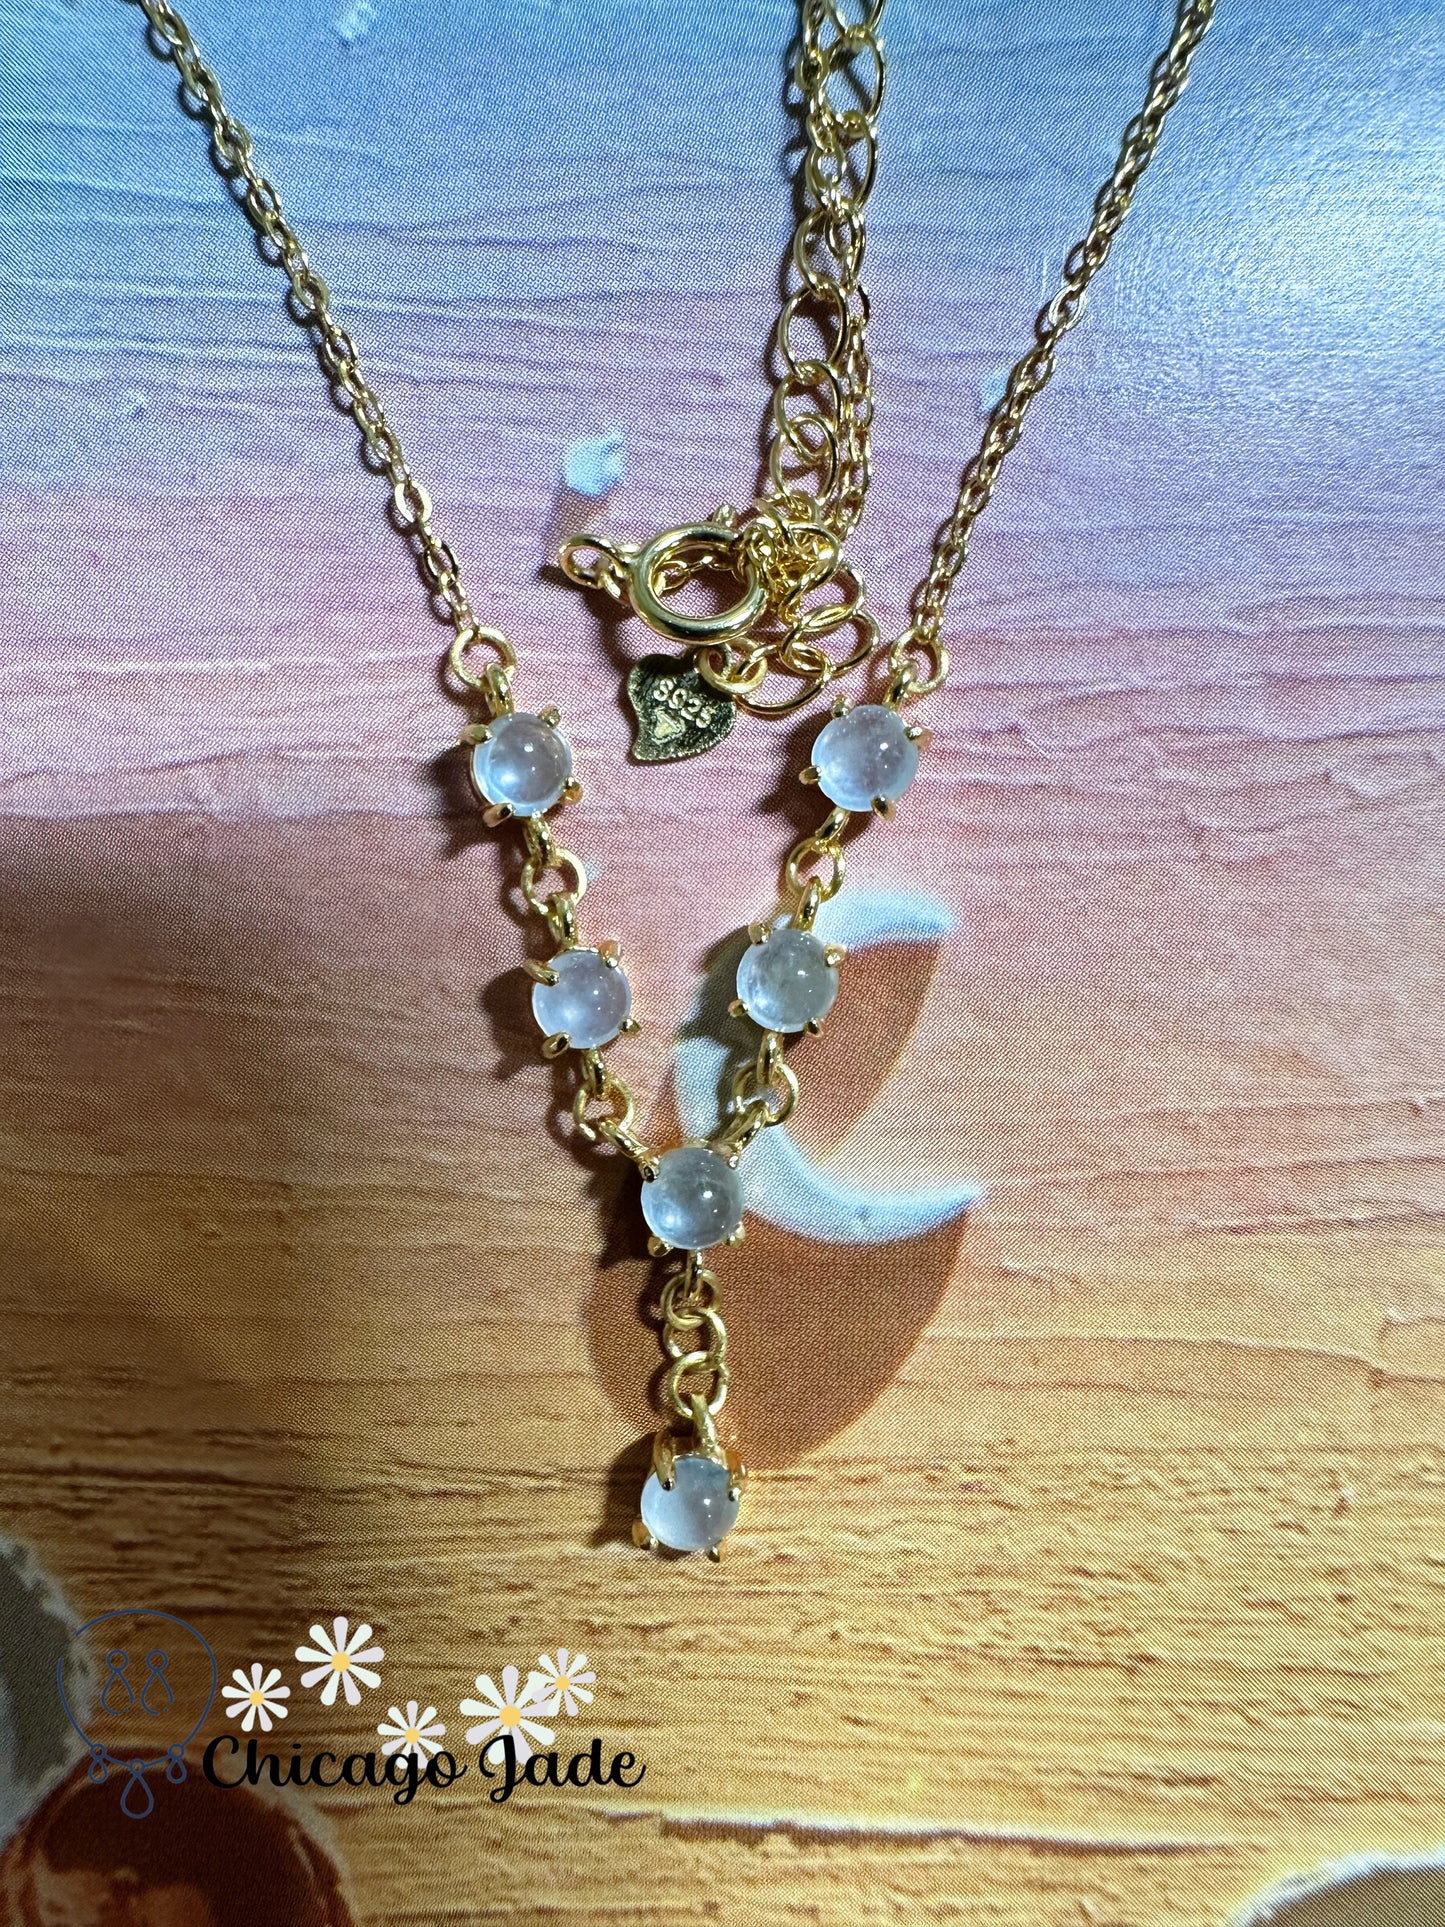 Elegant designed translucent six jadeite jade stones on sterling silver necklace